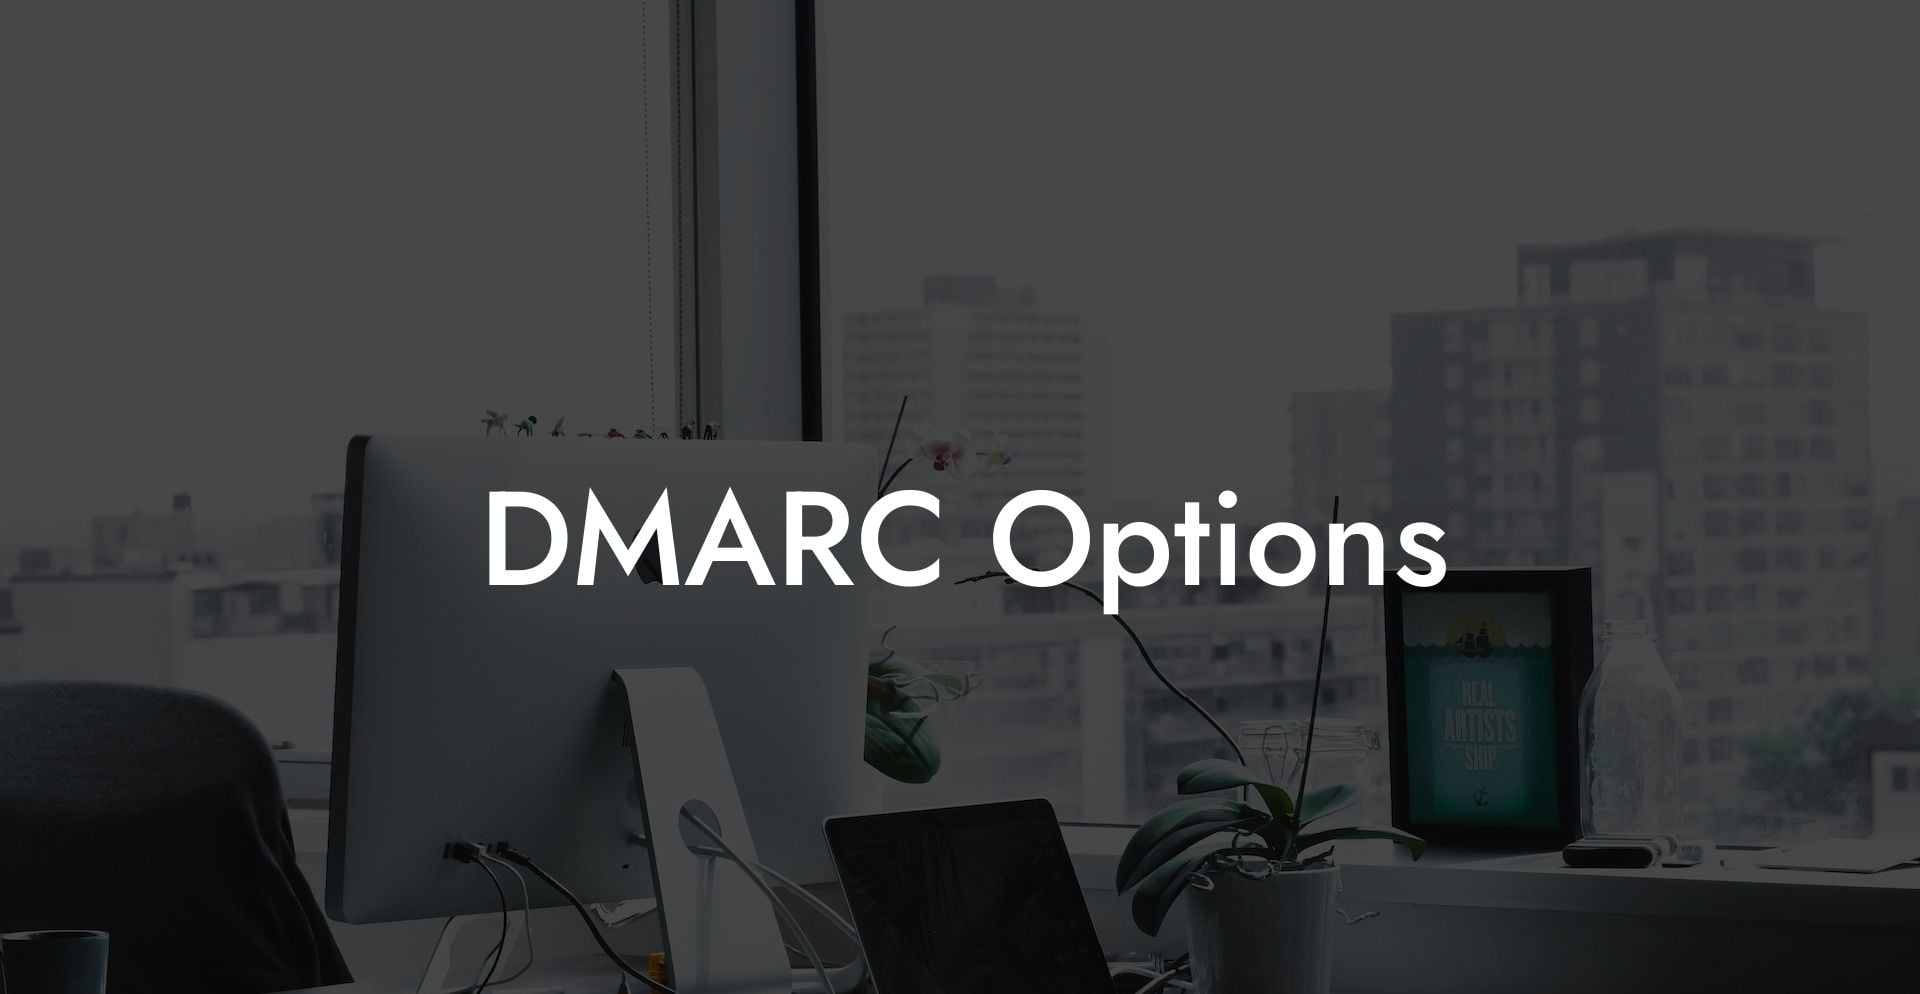 DMARC Options